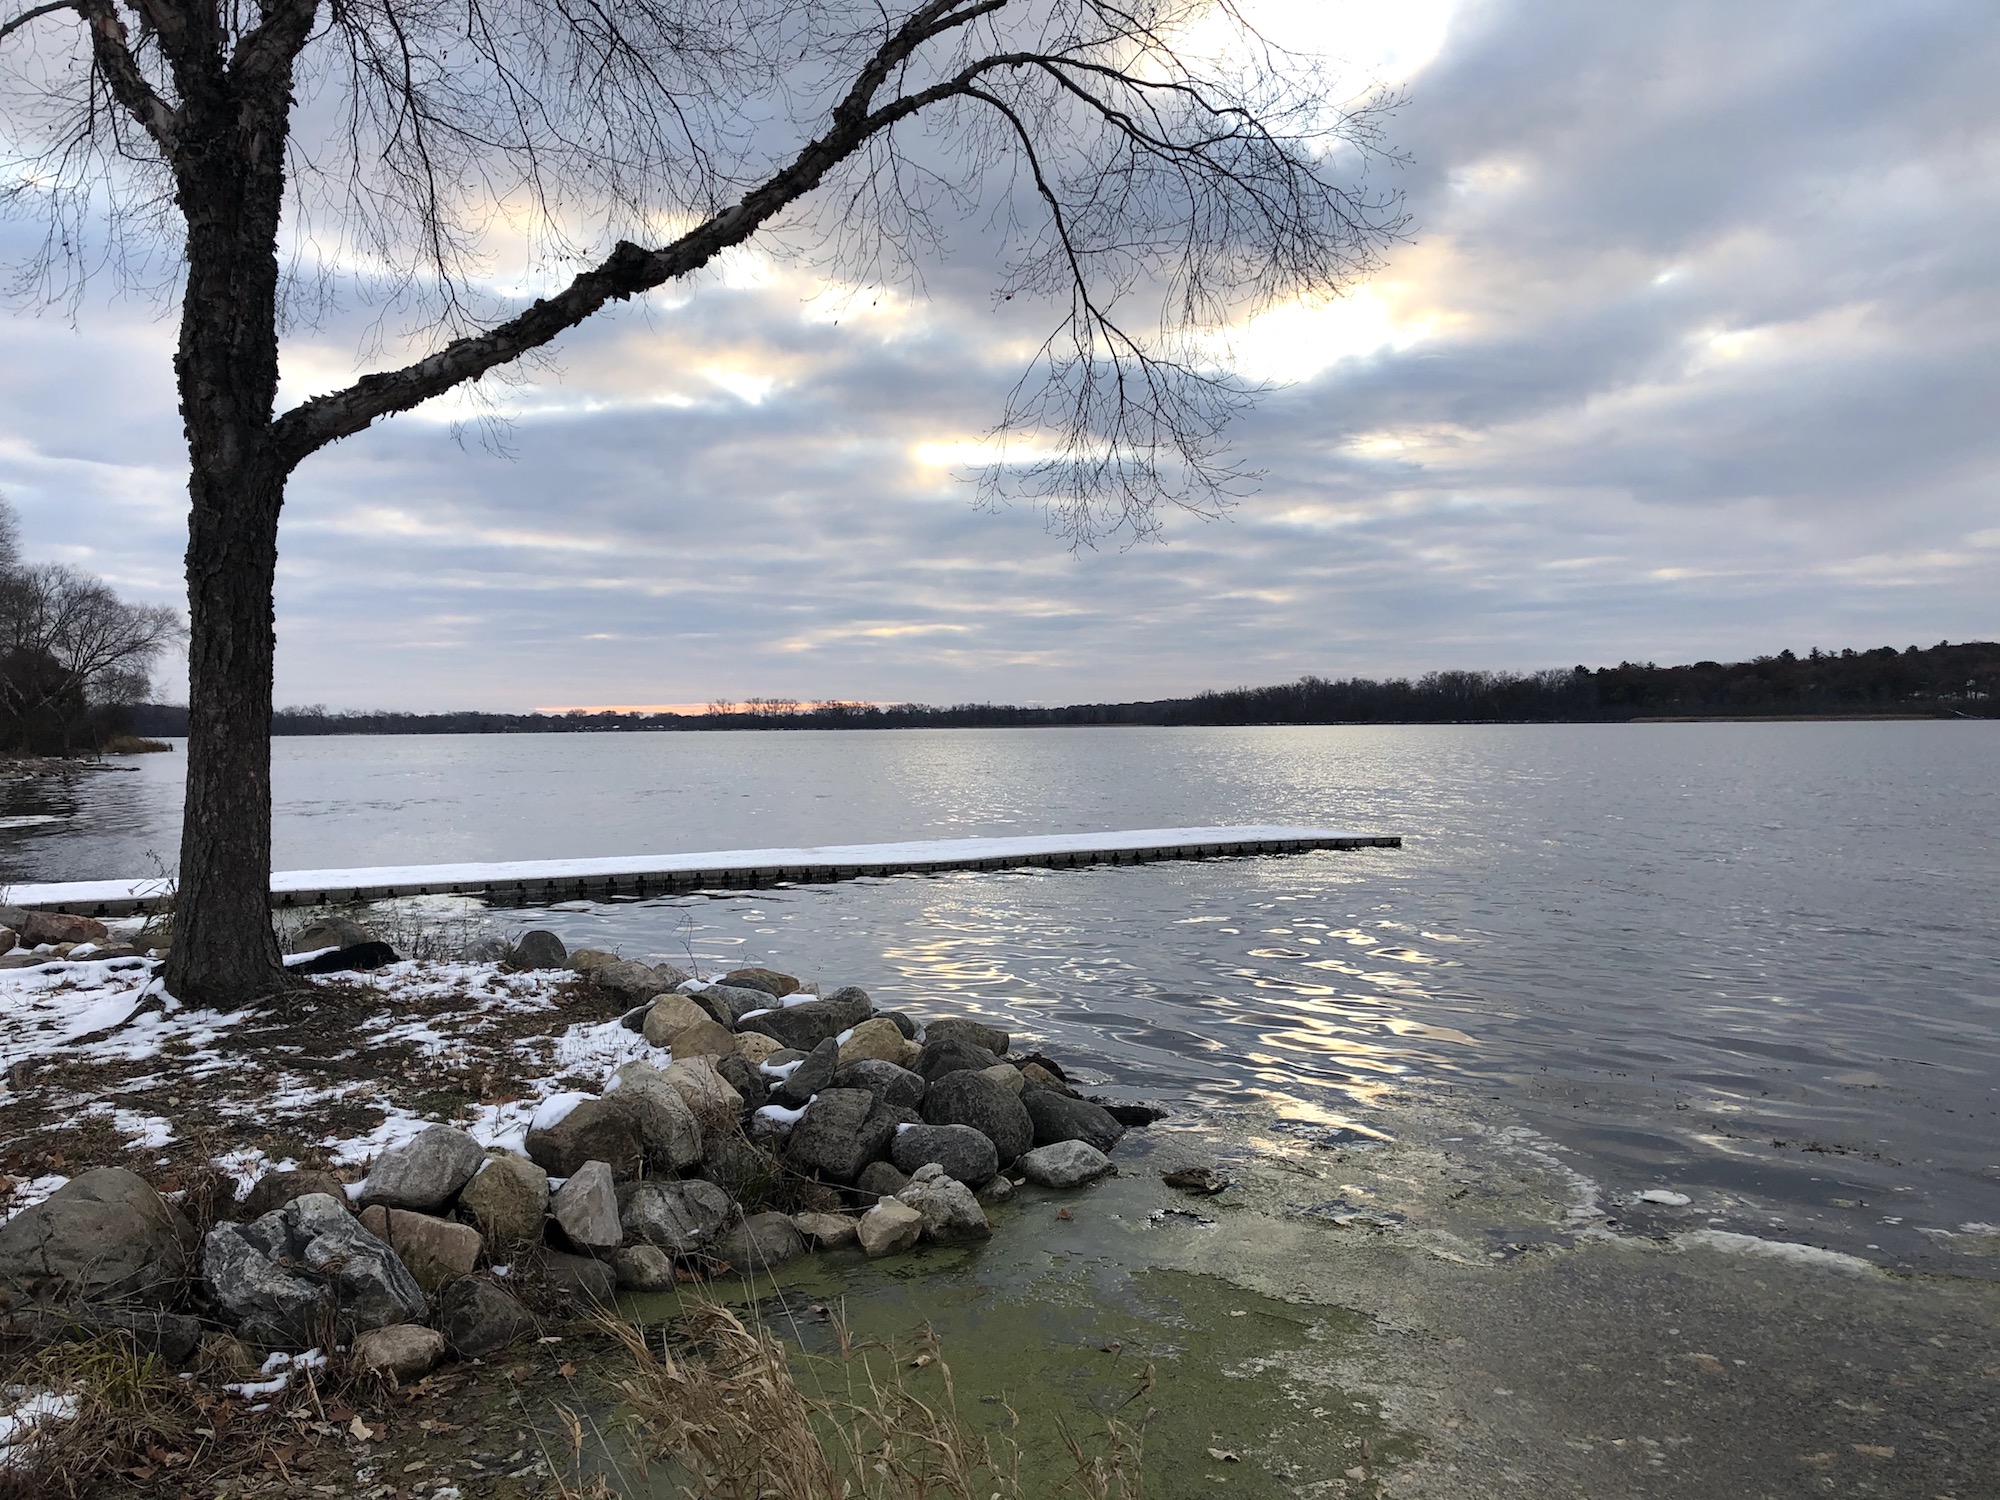 Lake Wingra on November 9, 2019.